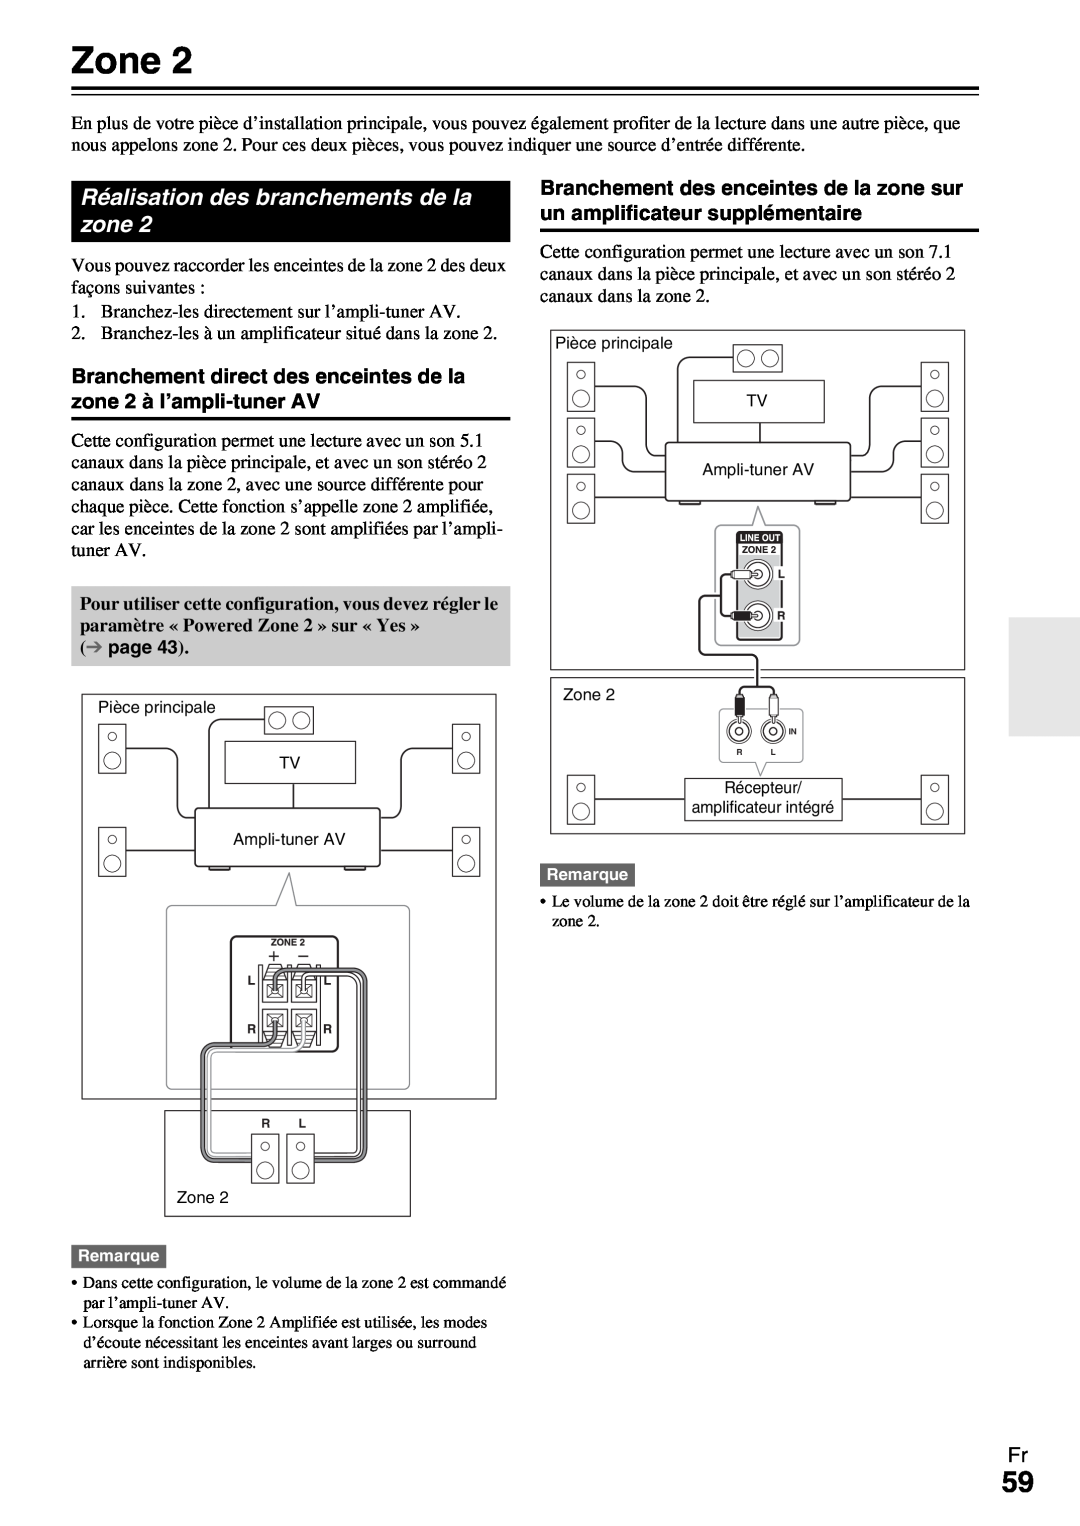 Onkyo HT-R990 instruction manual Réalisation des branchements de la zone, Zone 